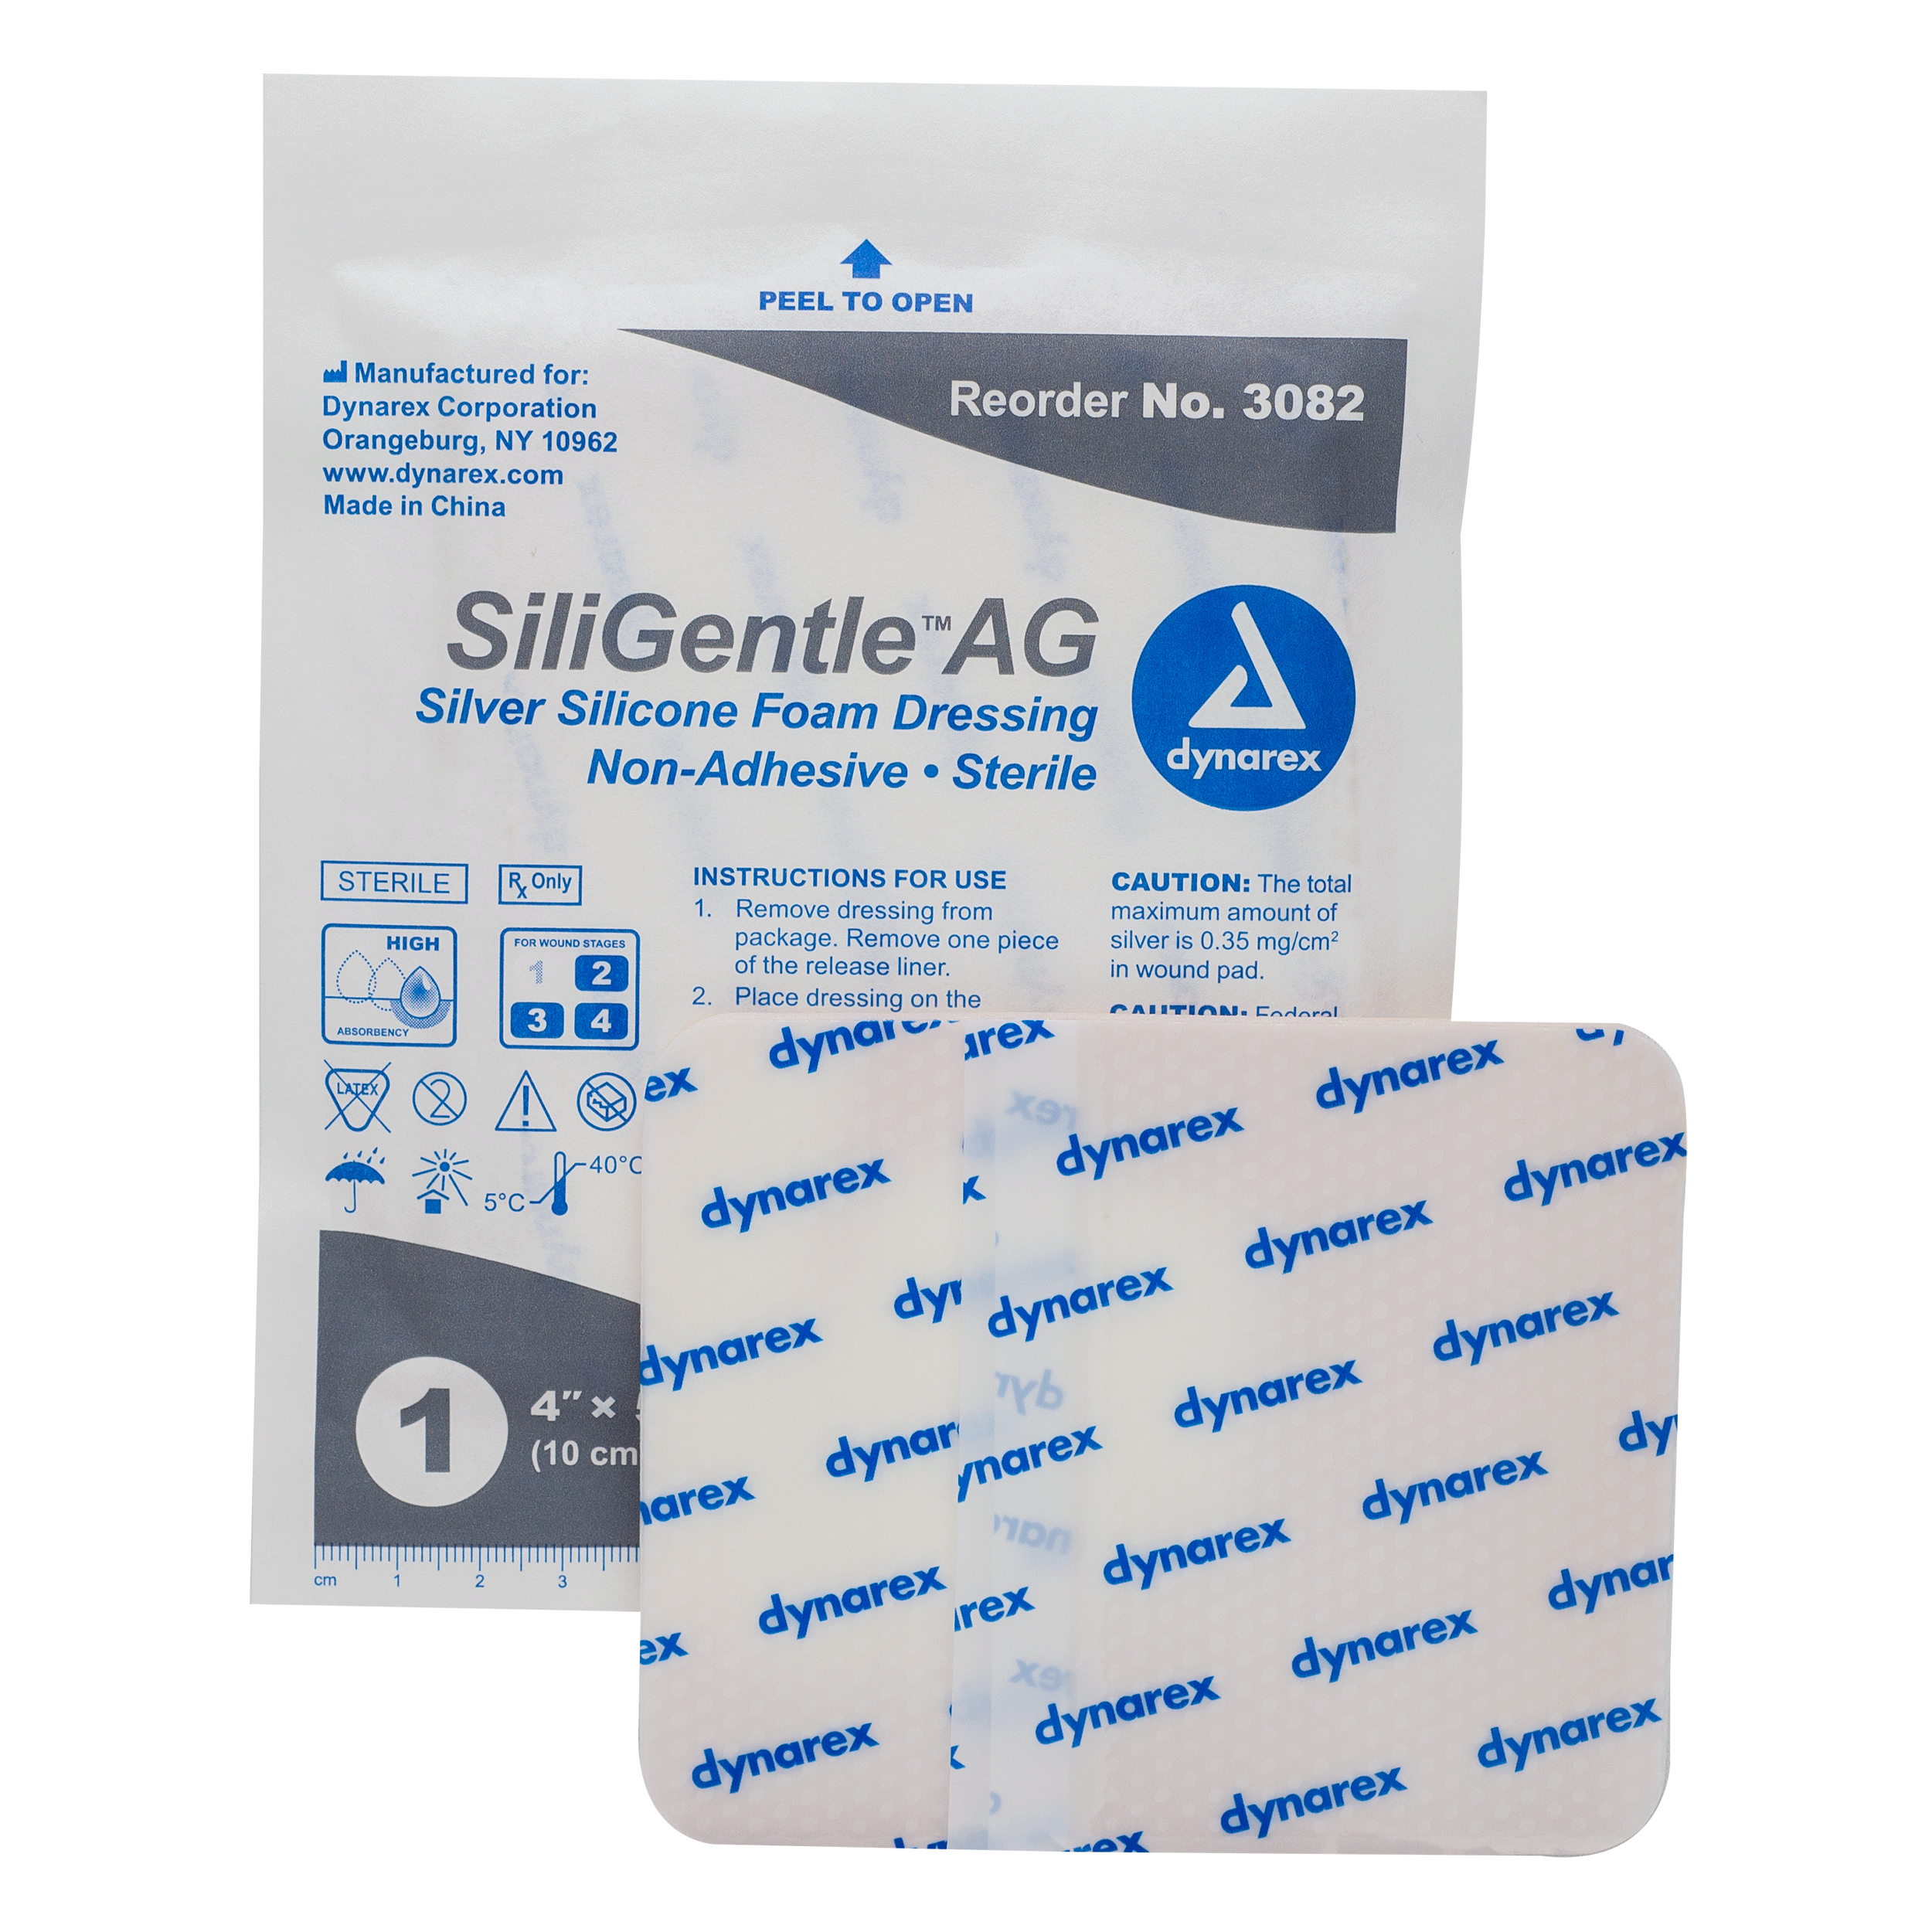 SiliGentle™ AG Silver Silicone Foam Dressing - 4 x 5in